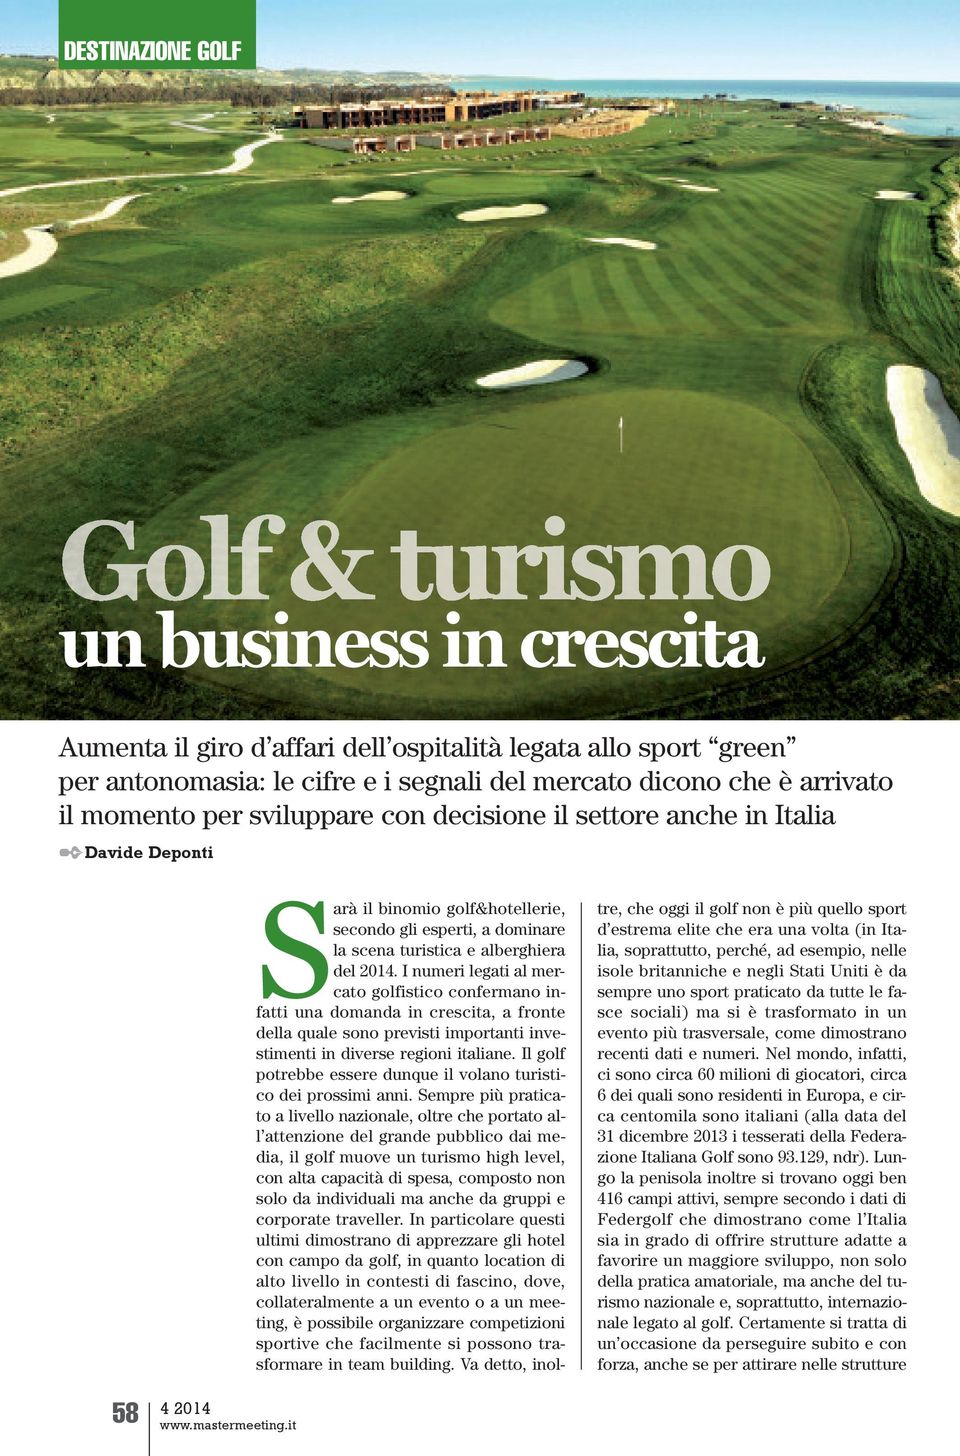 I numeri legati al mercato golfistico confermano infatti una domanda in crescita, a fronte della quale sono previsti importanti investimenti in diverse regioni italiane.